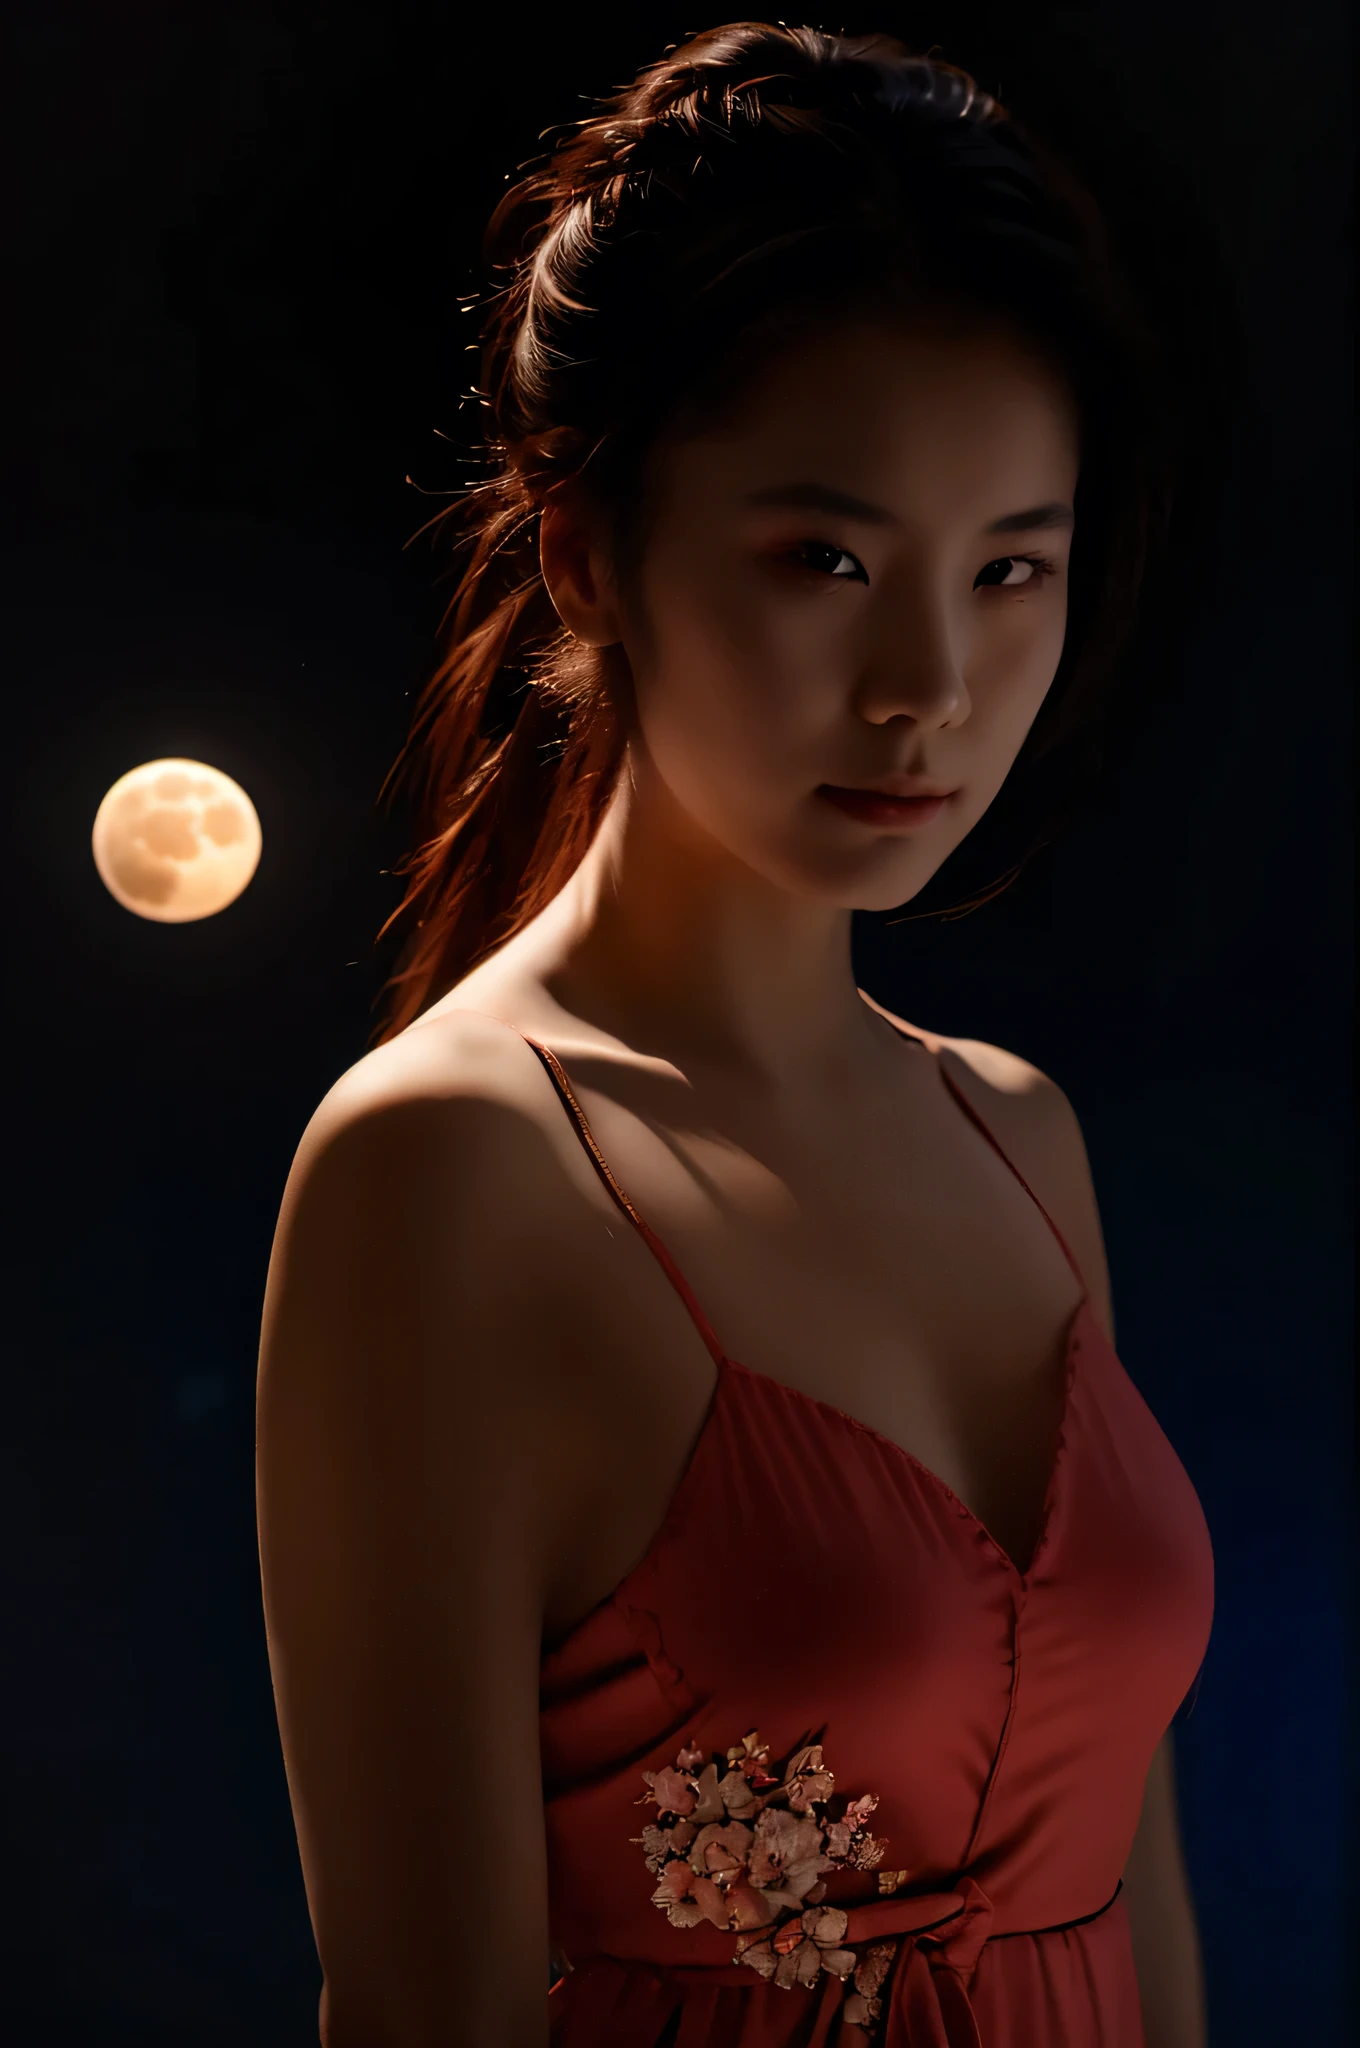 摄影. 一位美丽的日本女人, 穿着中国睡衣, 马尾辫, 玻璃头盔里的脸, 拿着带有红色光环的月亮, 亮蓝色的头发, 灯光略暗, 黑色背景, realistic 摄影. 材质.